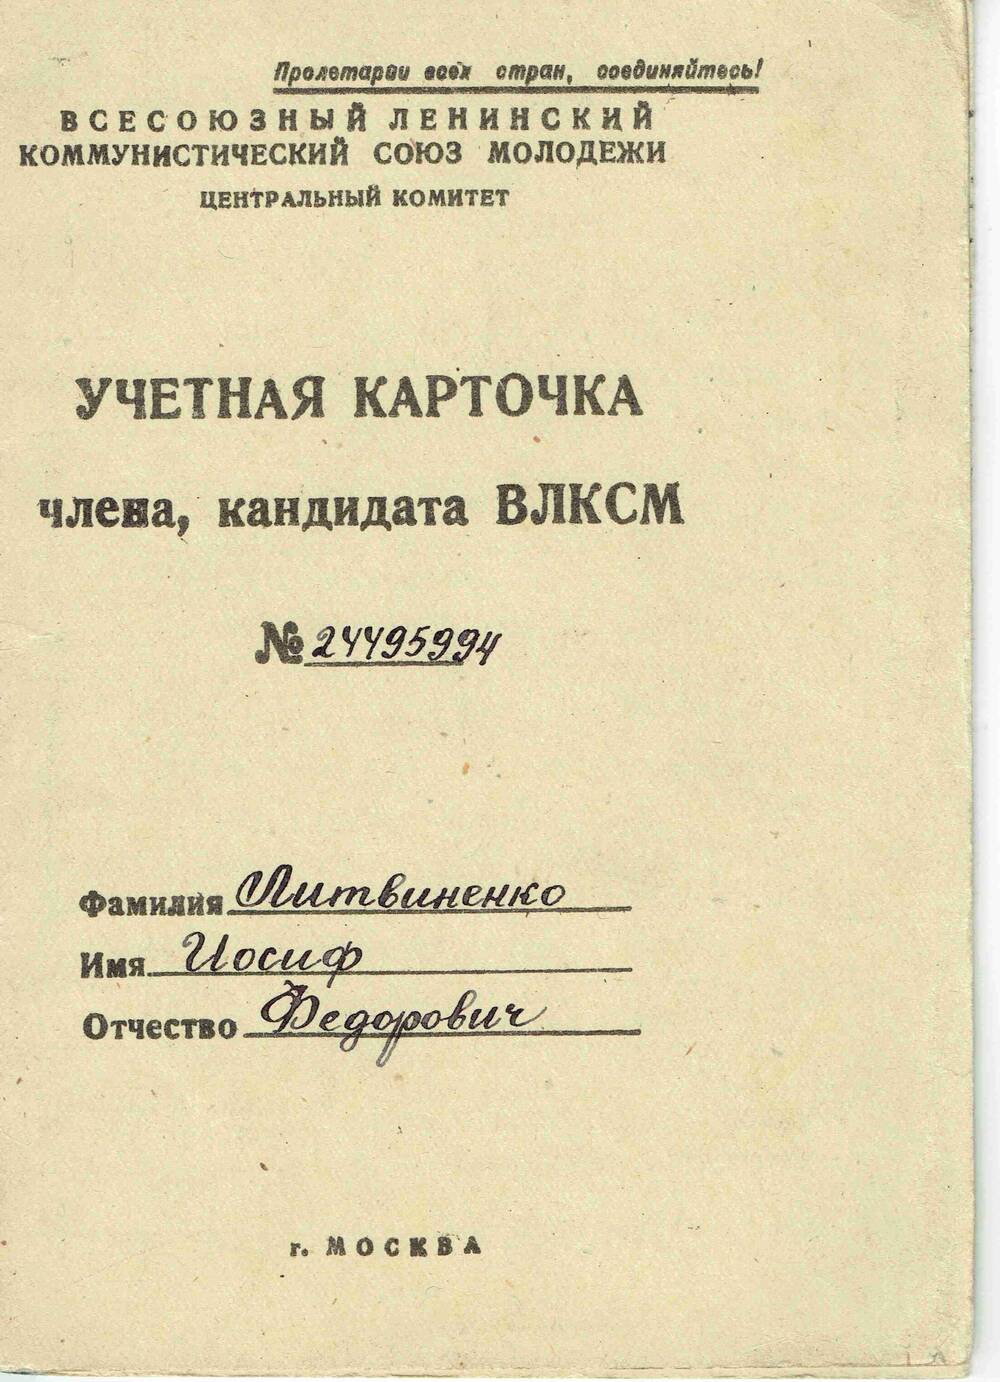 Учетная карточка члена кандидата ВЛКСМ №24495994 Литвиненко И.Ф.